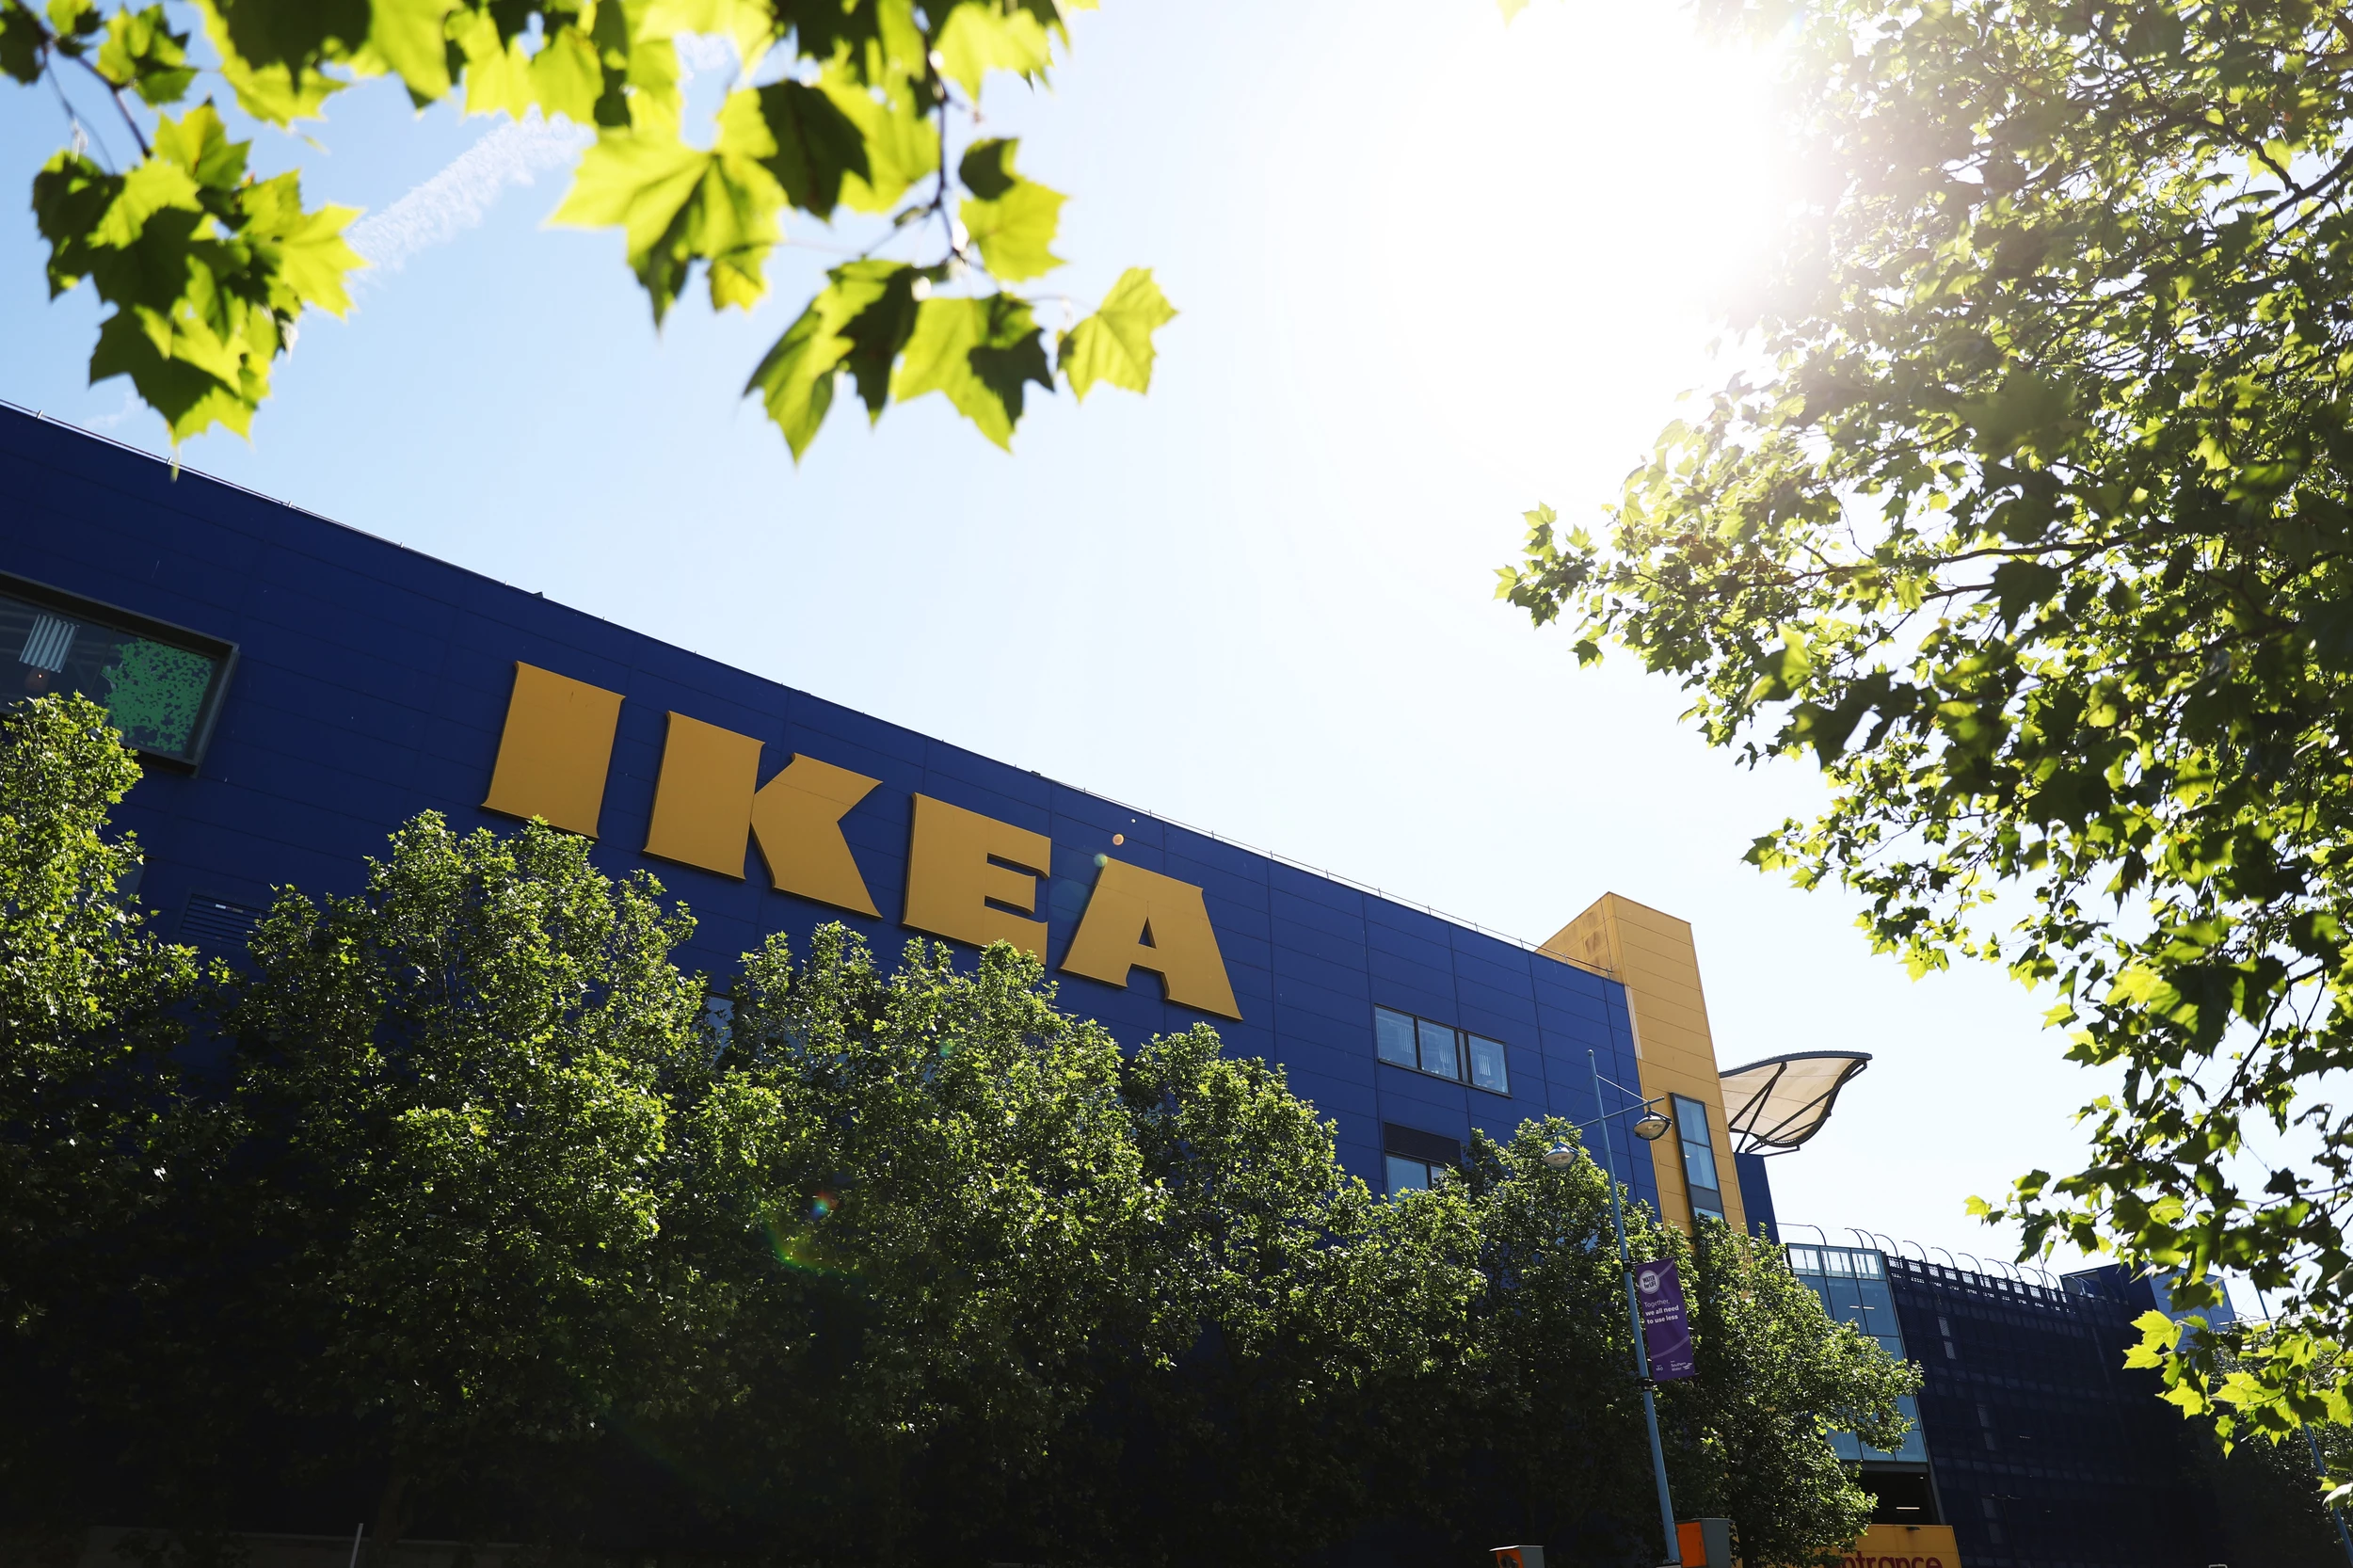 Should Tuscaloosa Have an Ikea?